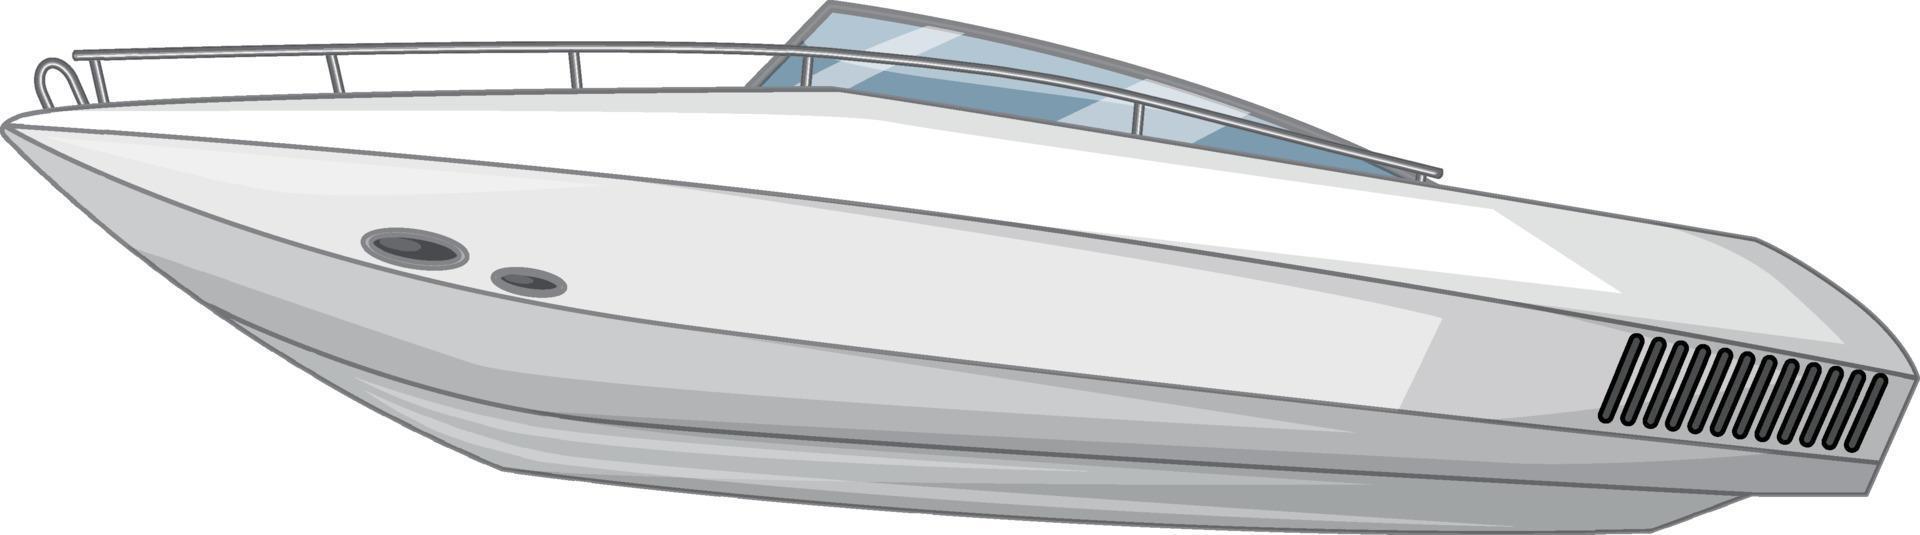 speedboot of motorboot geïsoleerd op witte achtergrond vector